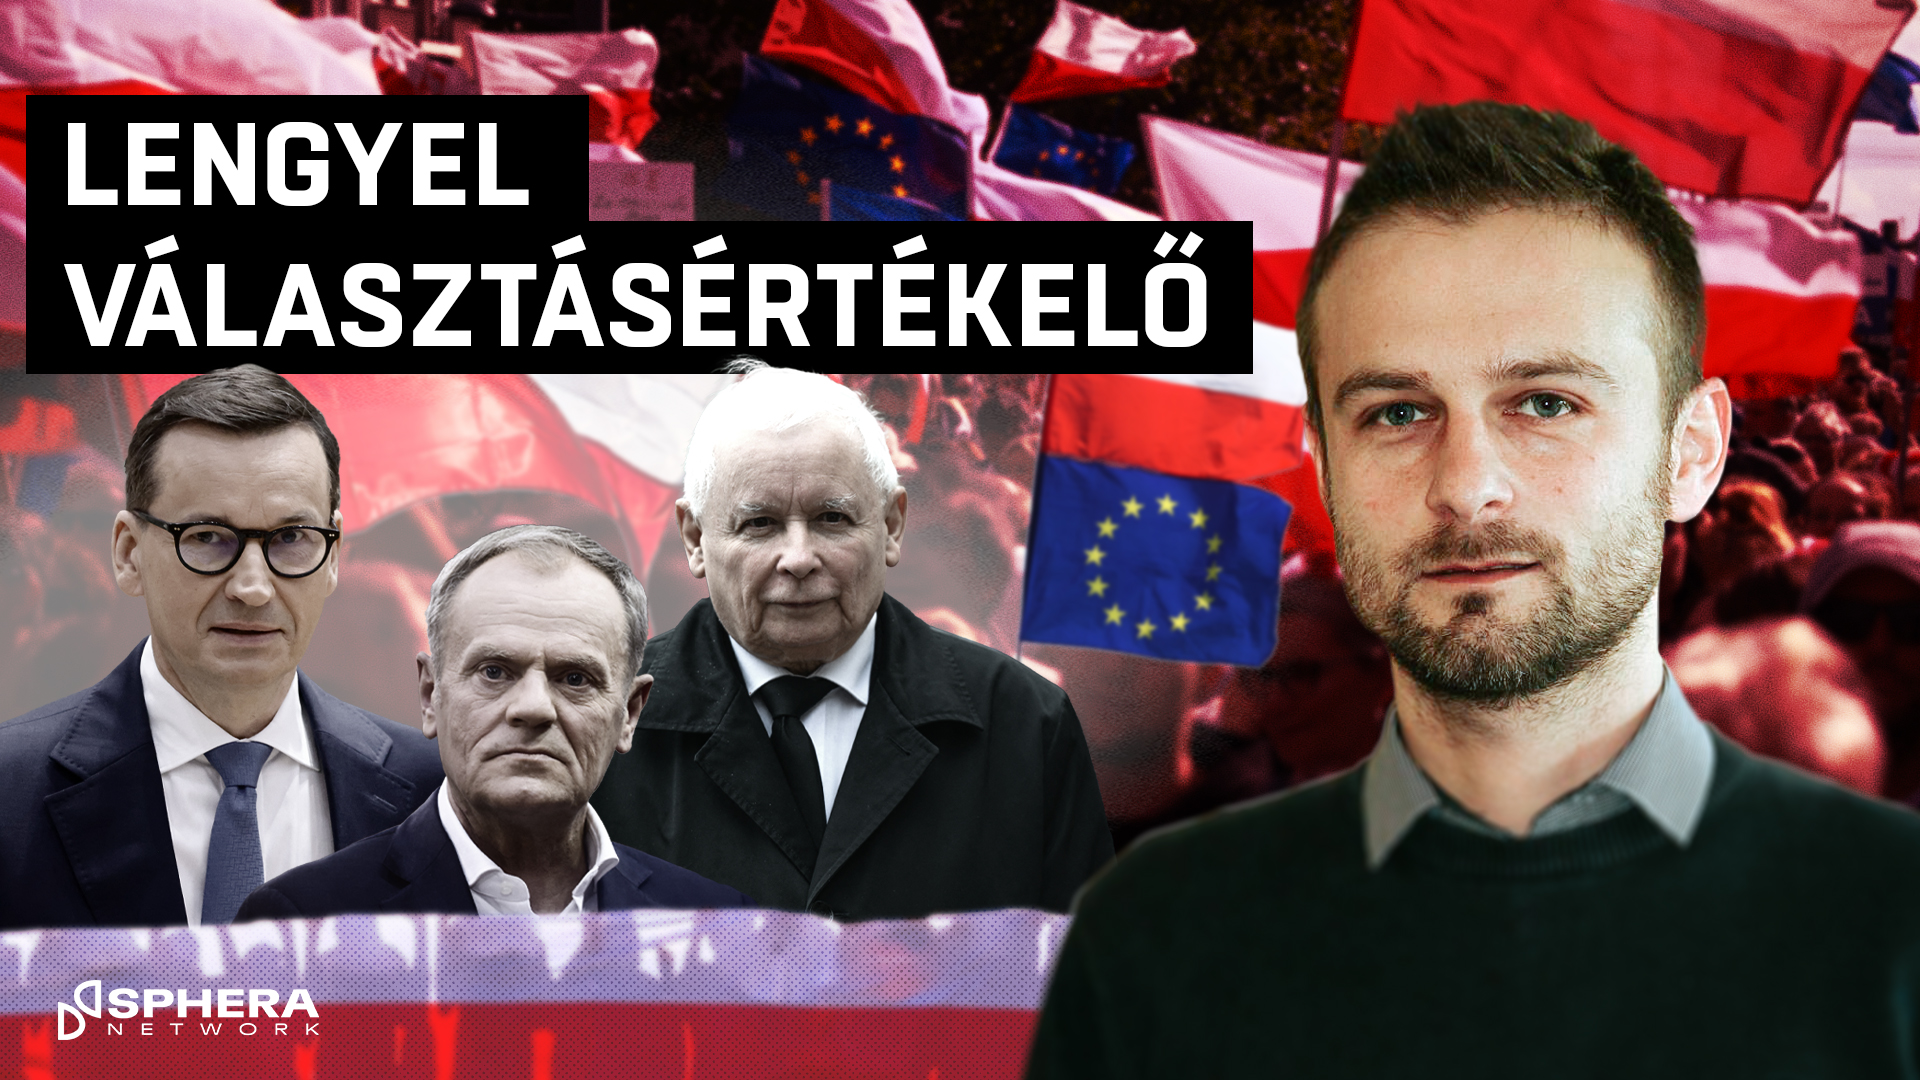 Mi történt a lengyel választáson, és miért fontos ez nekünk?